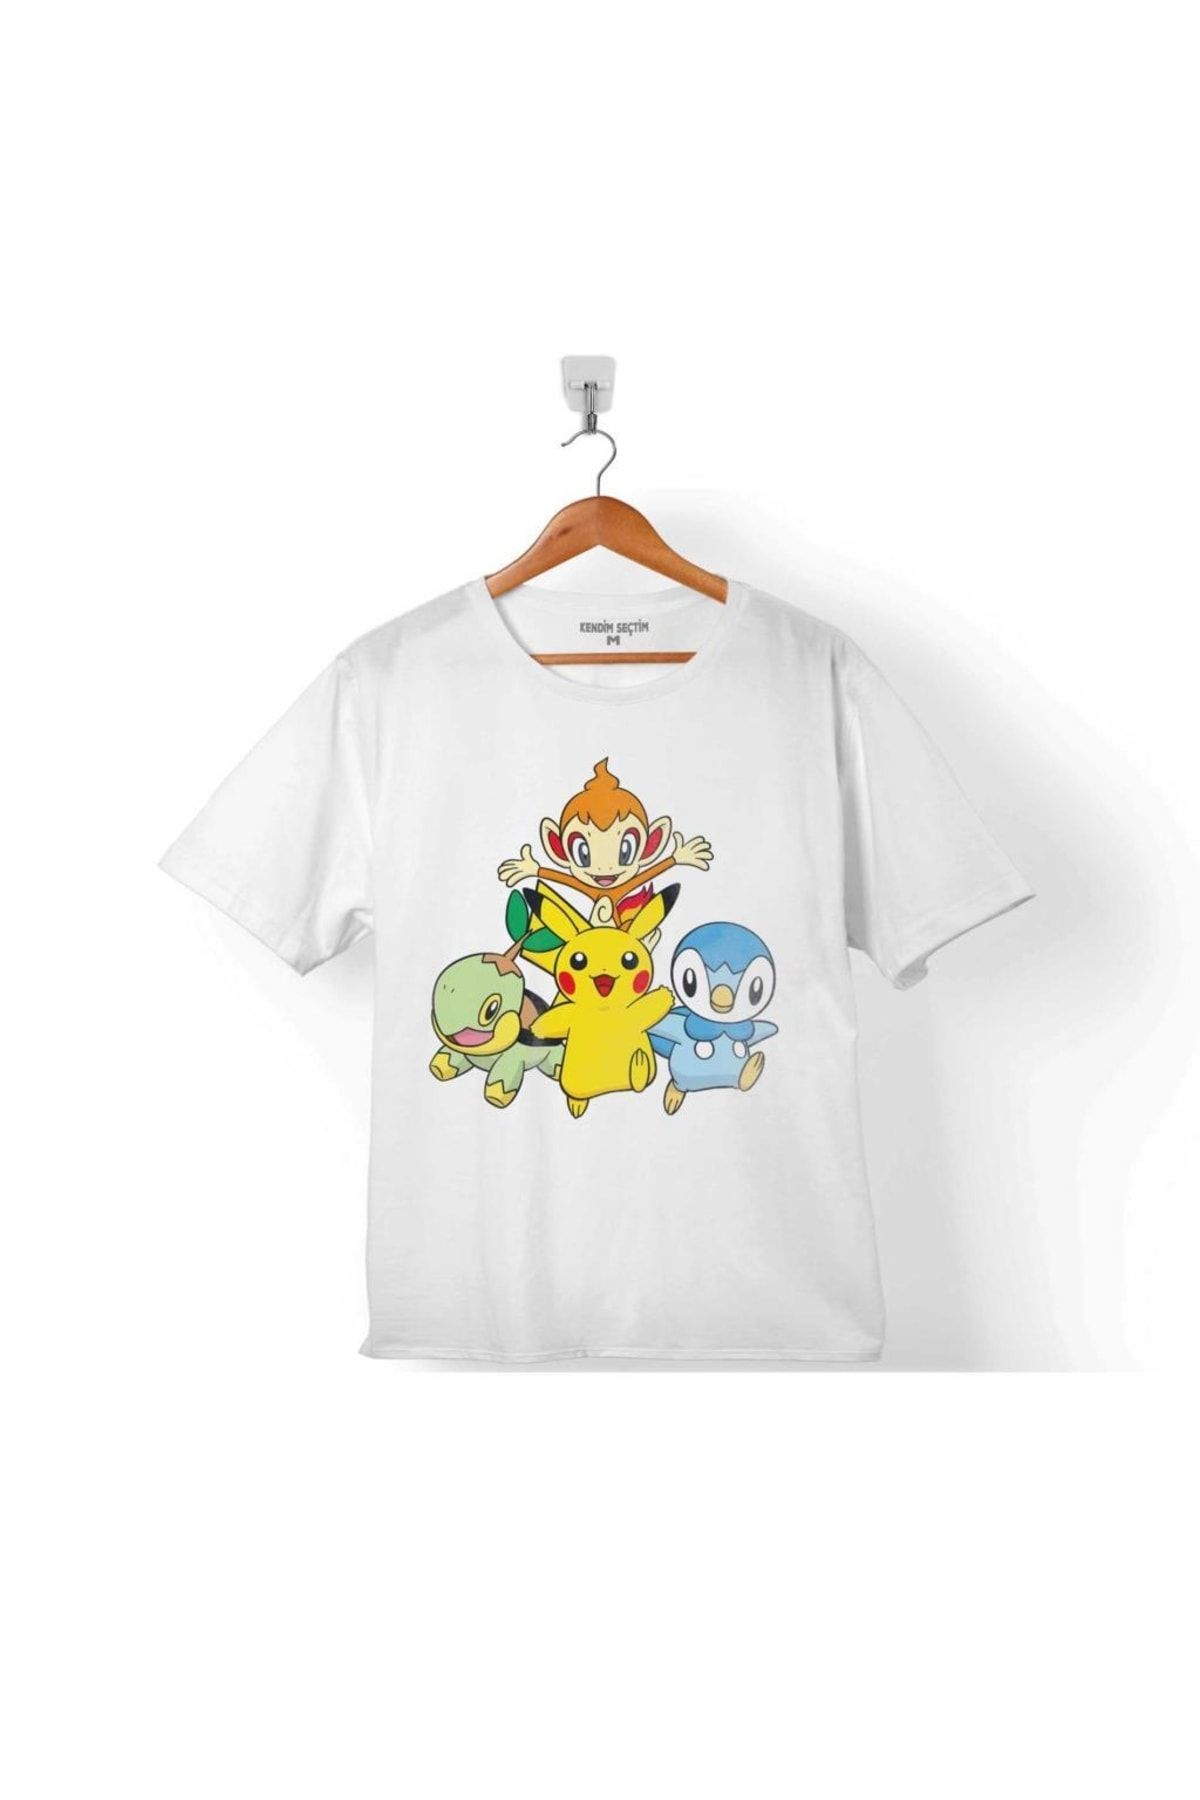 Kendim Seçtim Pokemon Pıkachu Chımchar Pıplup Turtwıg Çocuk Tişört